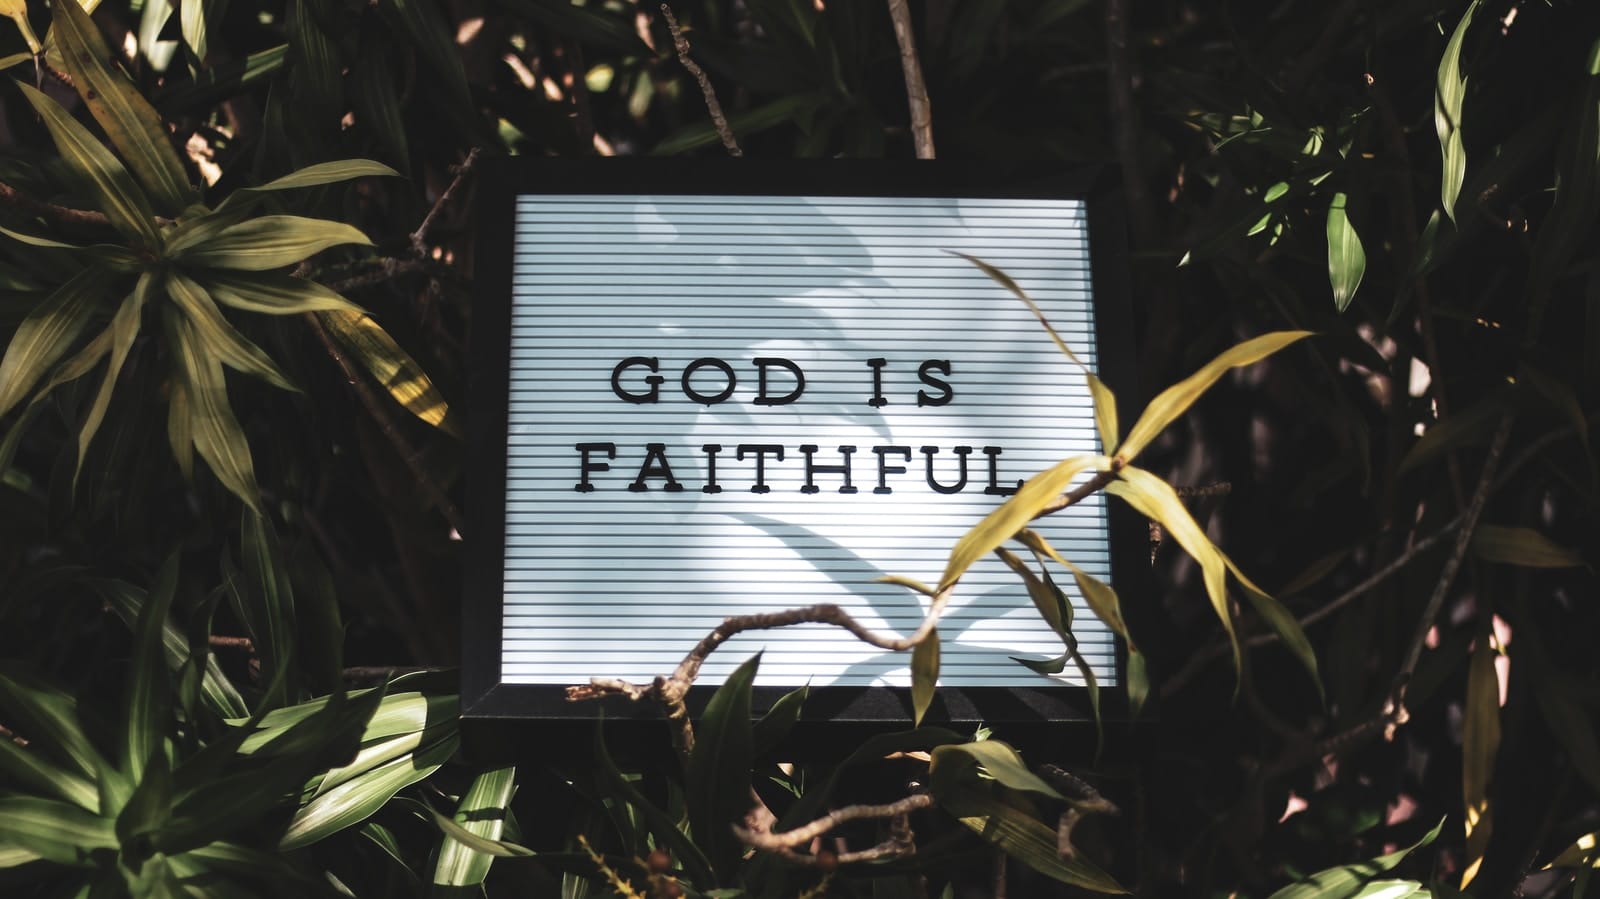 God is Faithful signage with leaved background